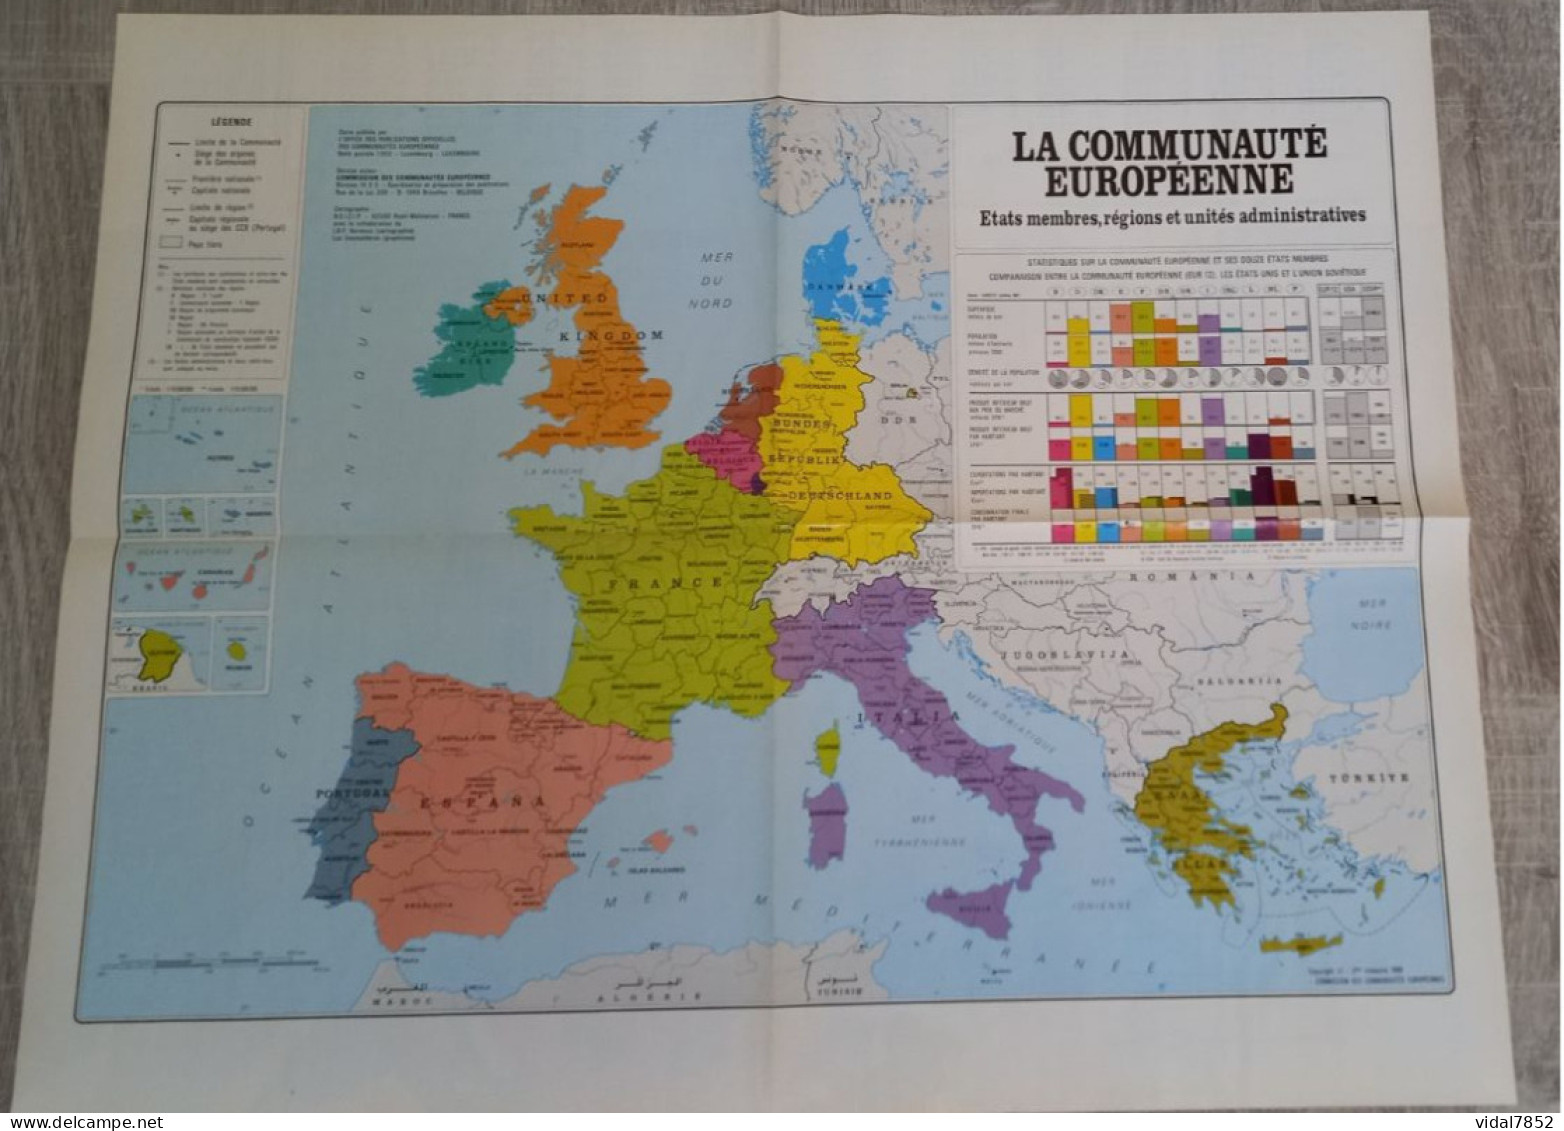 Calendrier-Almanach Des P.T.T 1990-Poster Intérieur Communauté Europèenne-Parc Axtérix Département AIN-01-Référence 421 - Grand Format : 1981-90